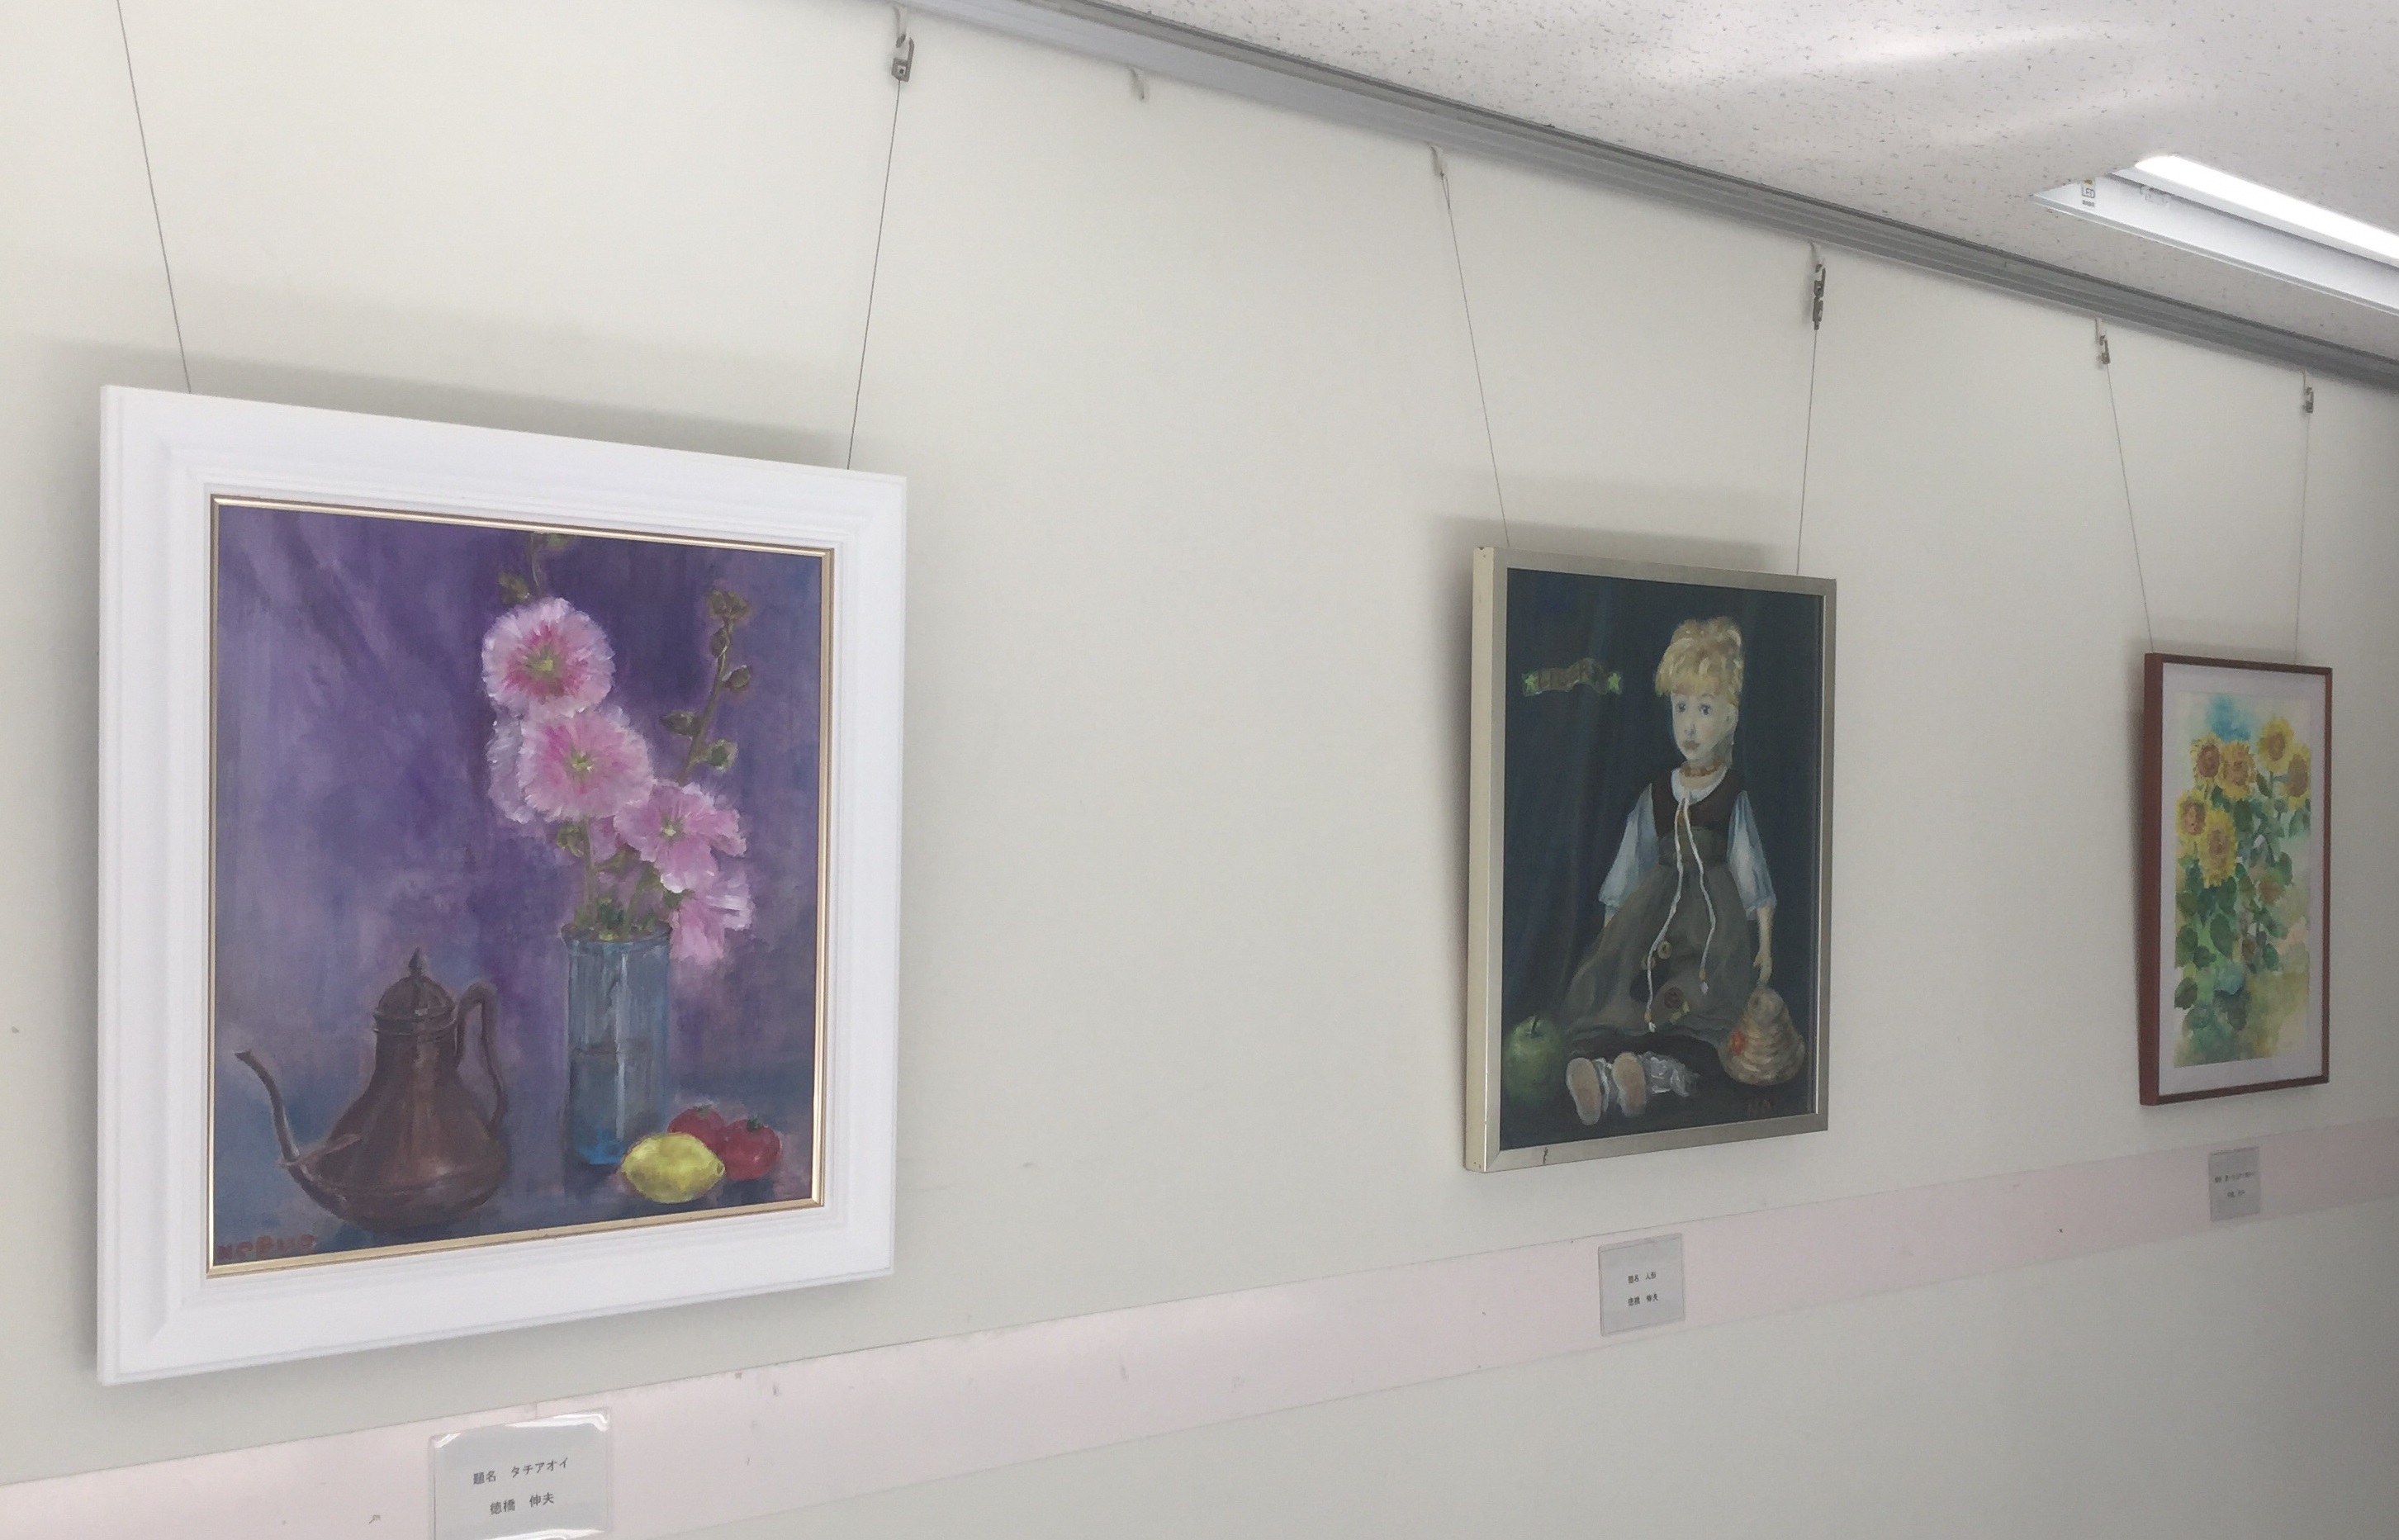 県庁ギャラリーで 新潟県障害者芸術作品展 が開催中です 彡 新潟文化物語